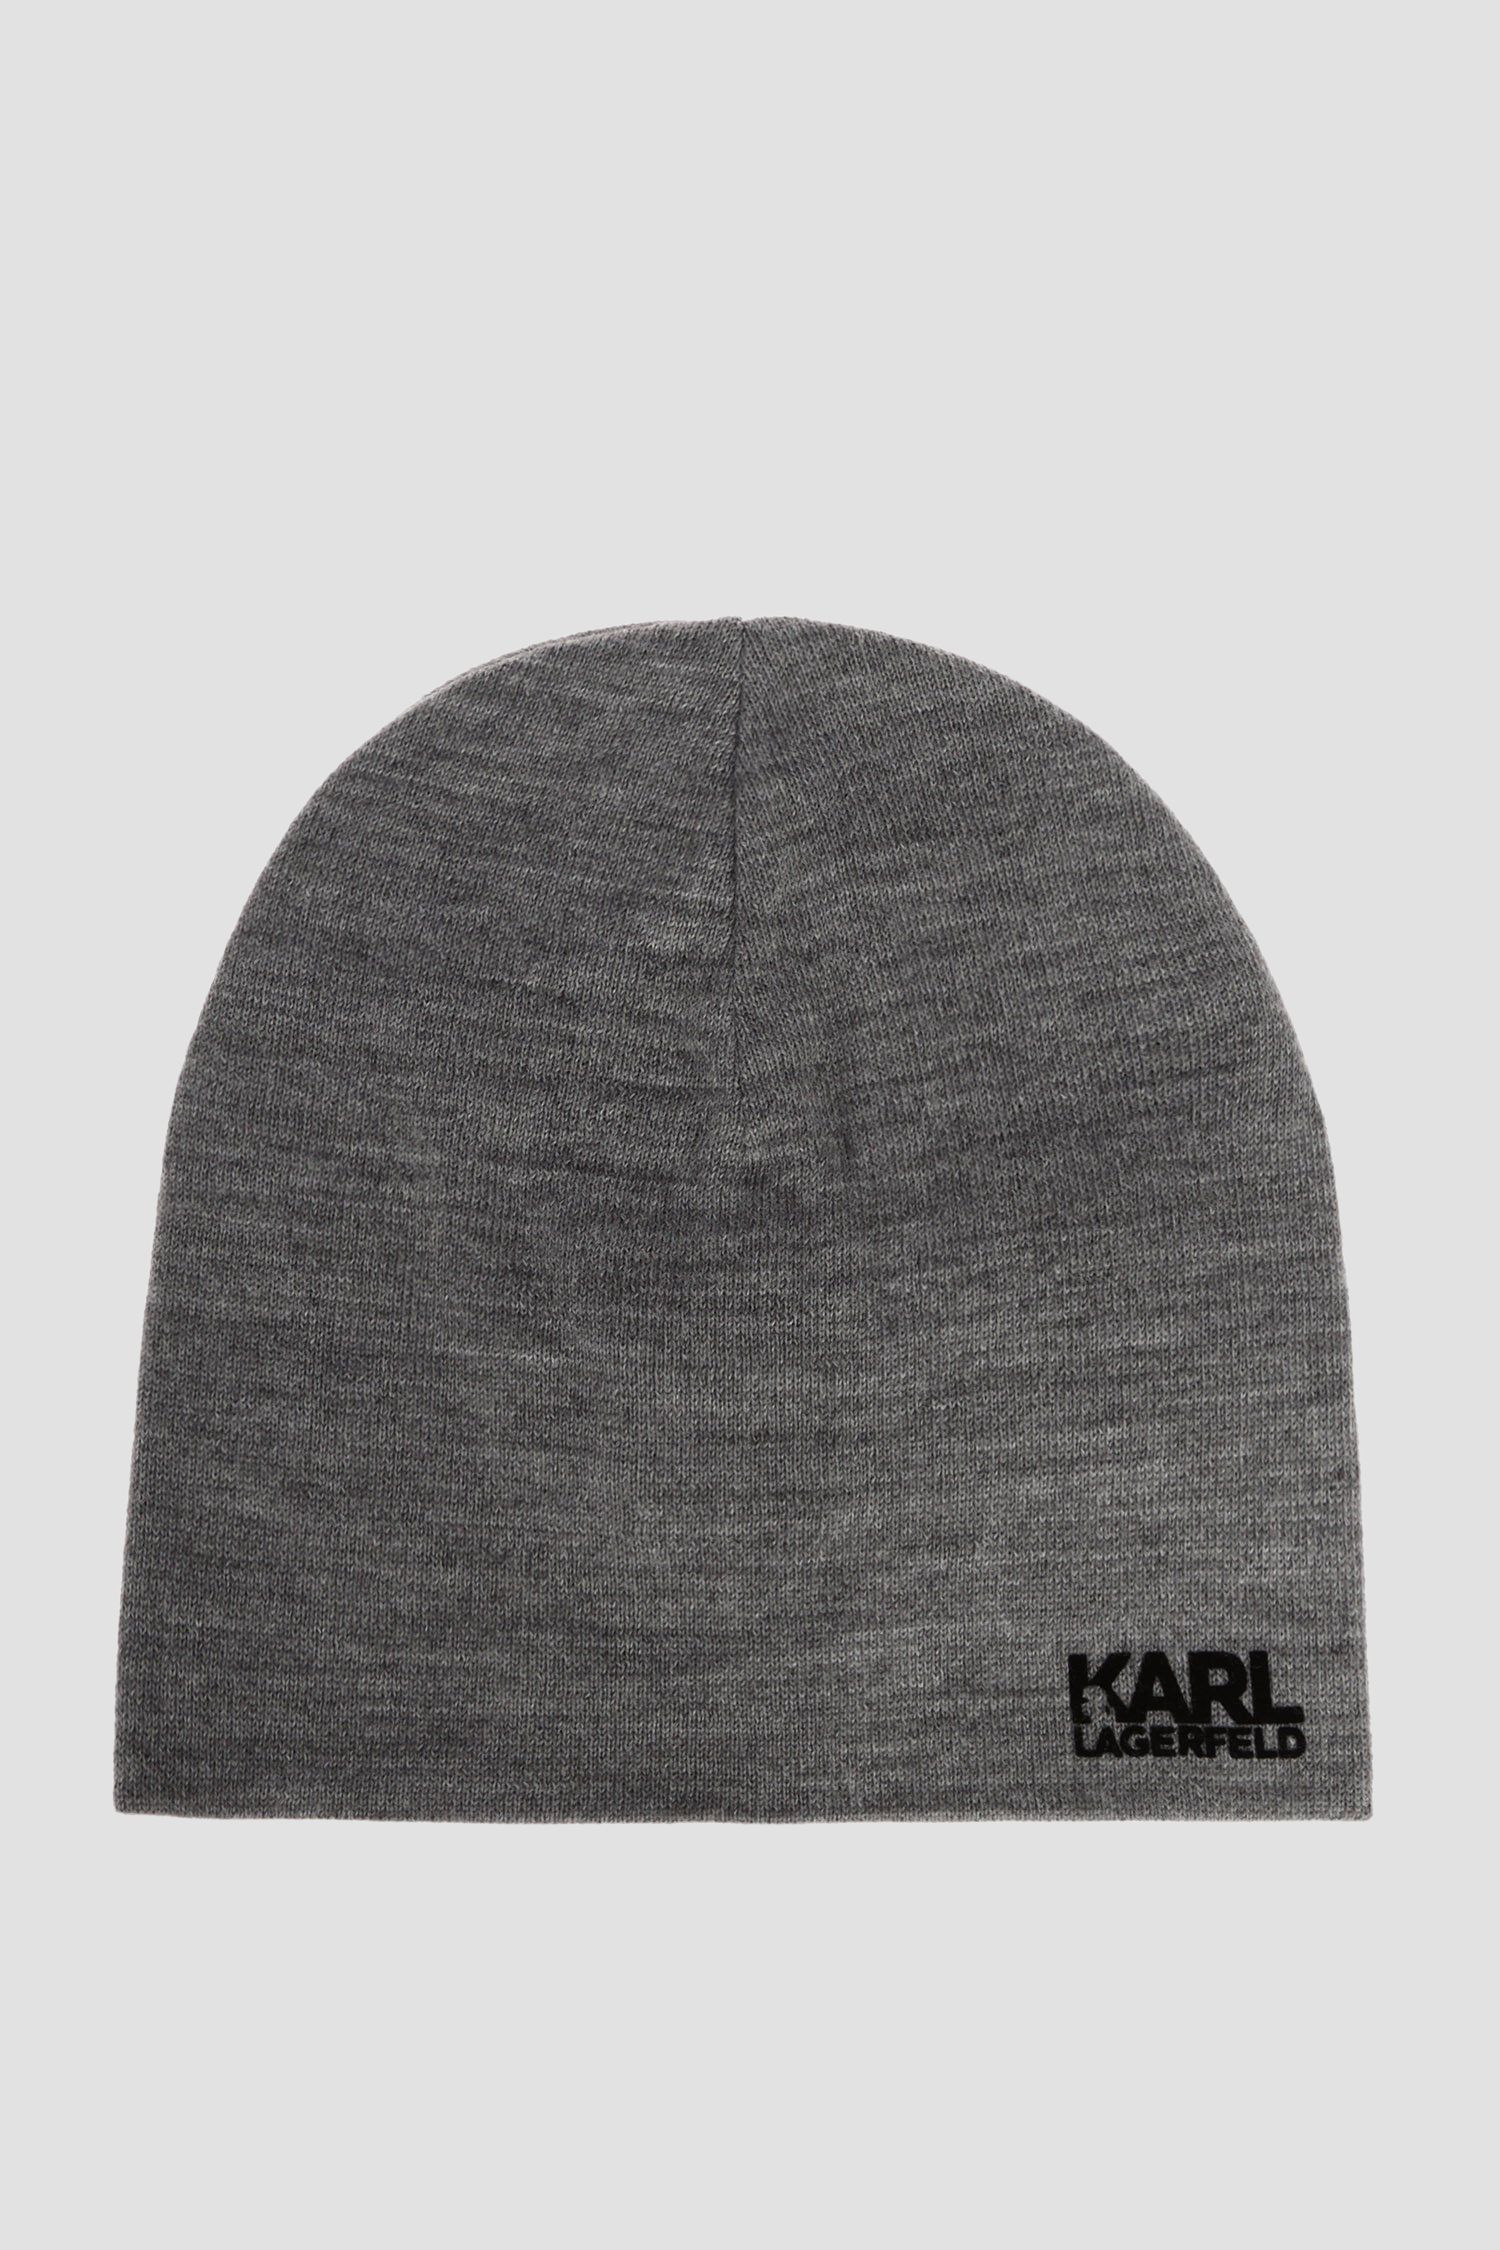 Мужская серая шерстяная шапка Karl Lagerfeld 592324.805601;960